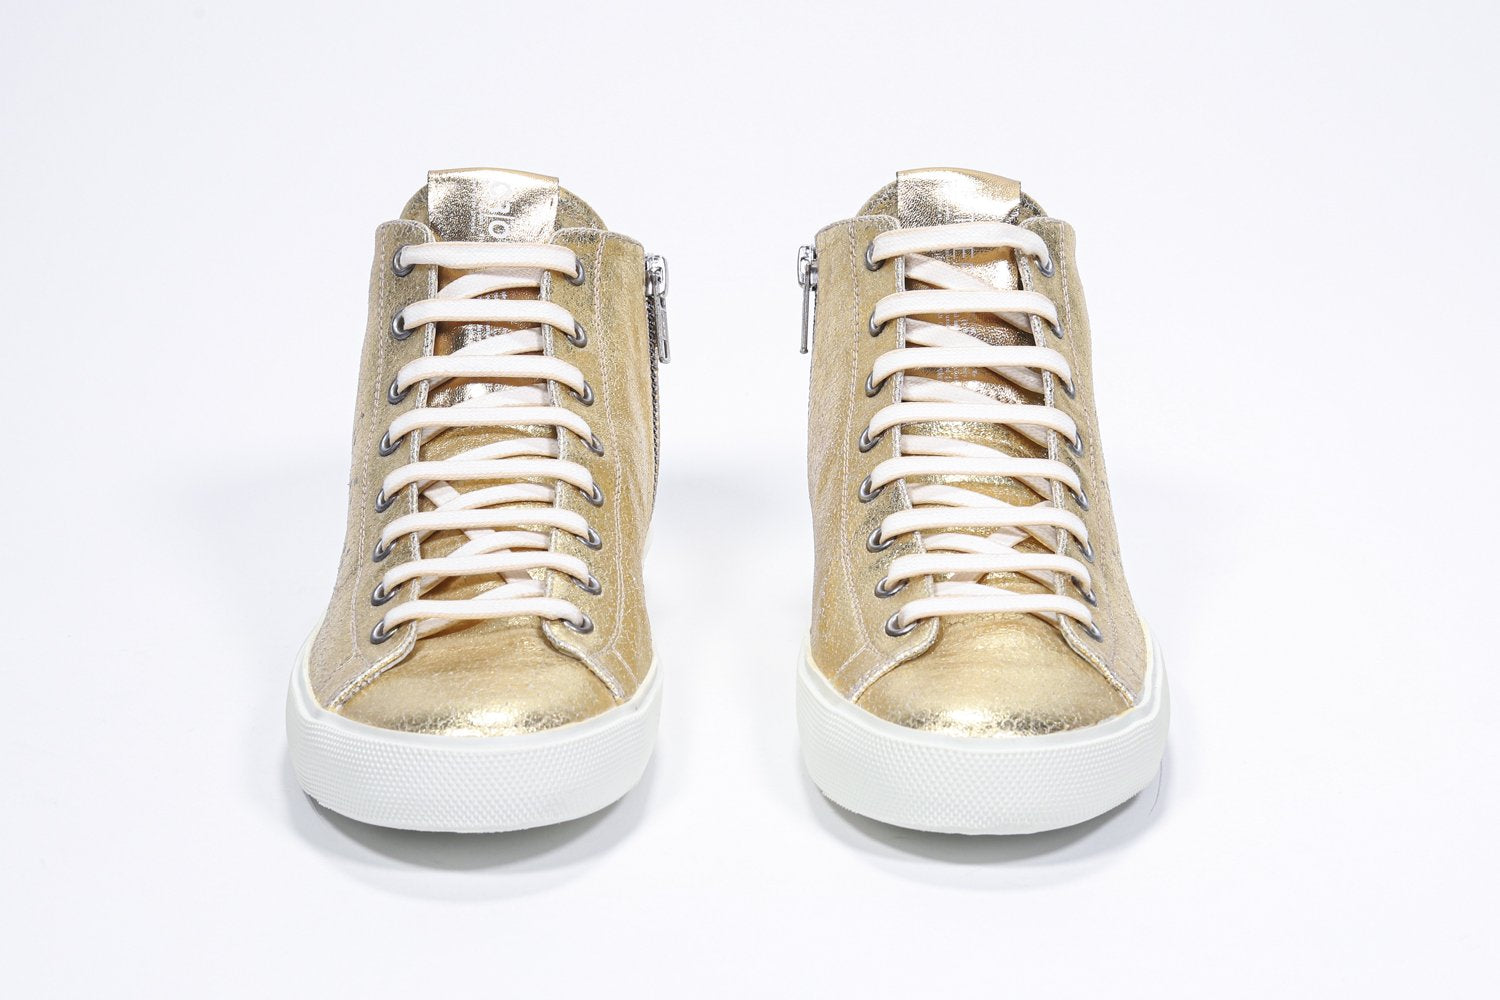 Vorderansicht des goldenen Mid-Top-Schuhs sneaker mit Obermaterial aus Vollleder mit perforiertem Kronenlogo, Innenreißverschluss und weißer Sohle.